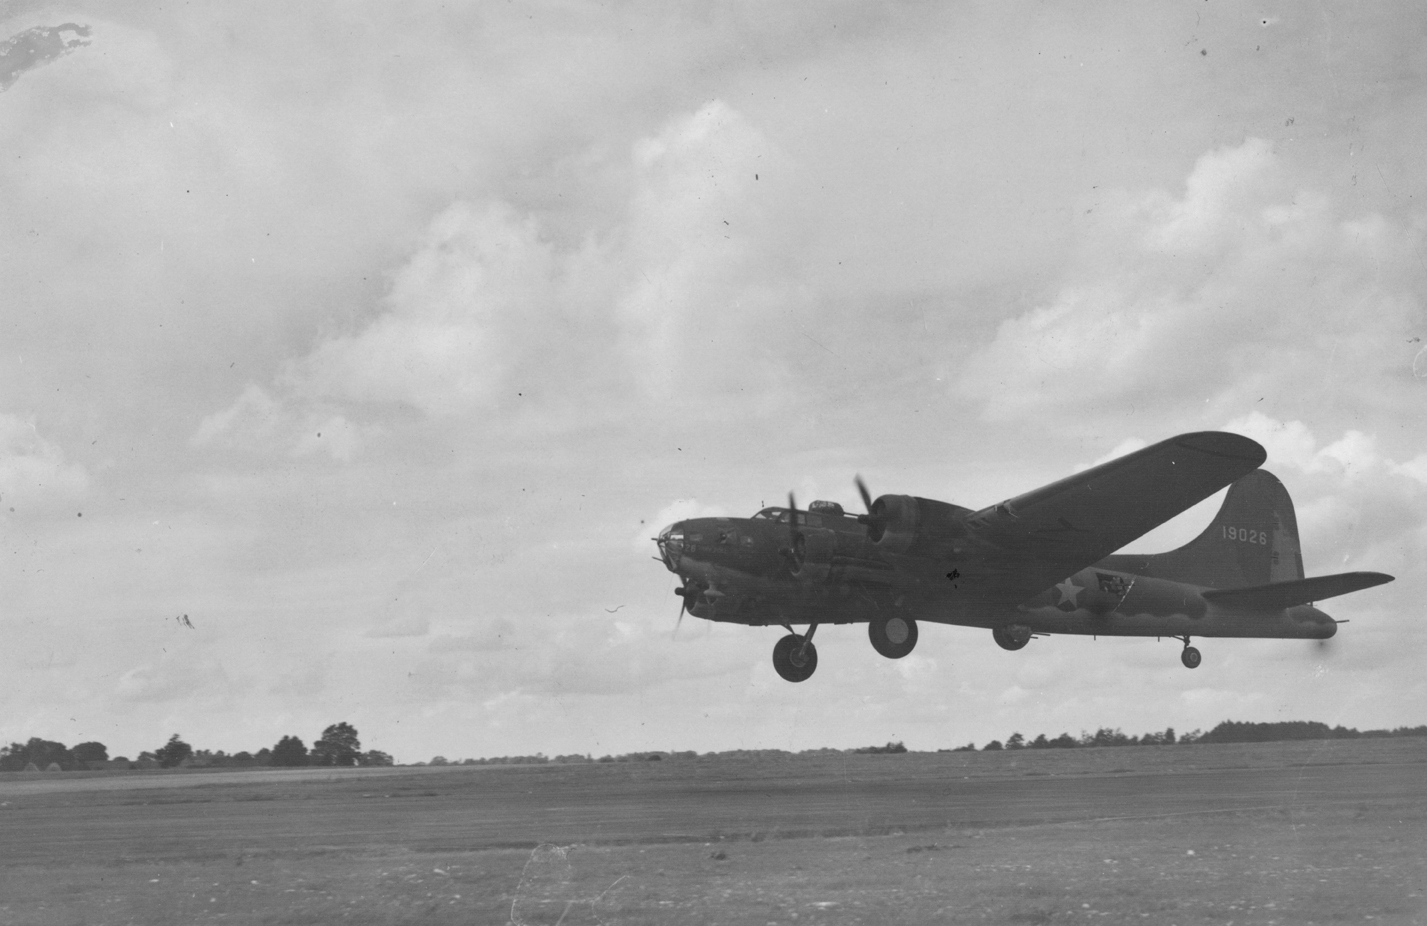 B-17 41-9026